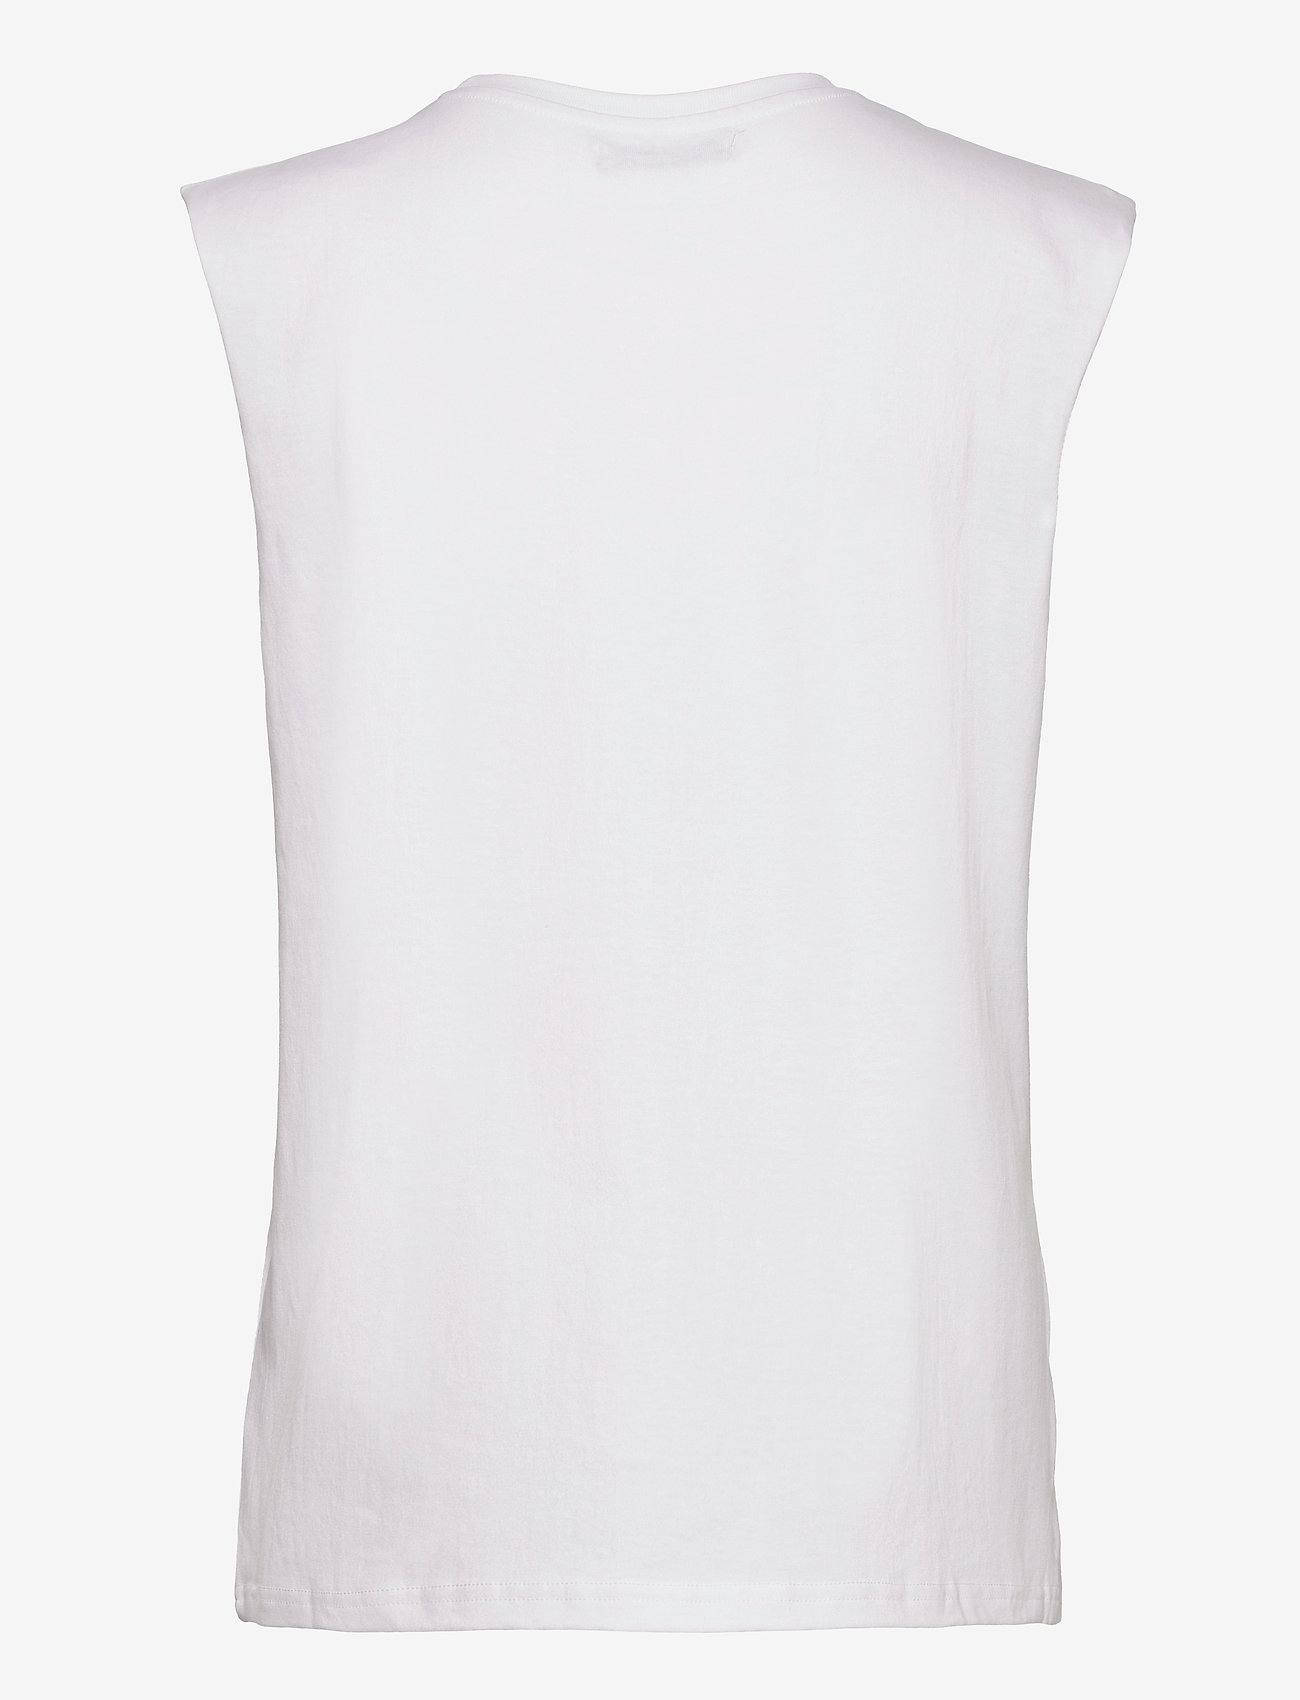 Stella Nova - Teri Guitar - t-shirt & tops - white - 1